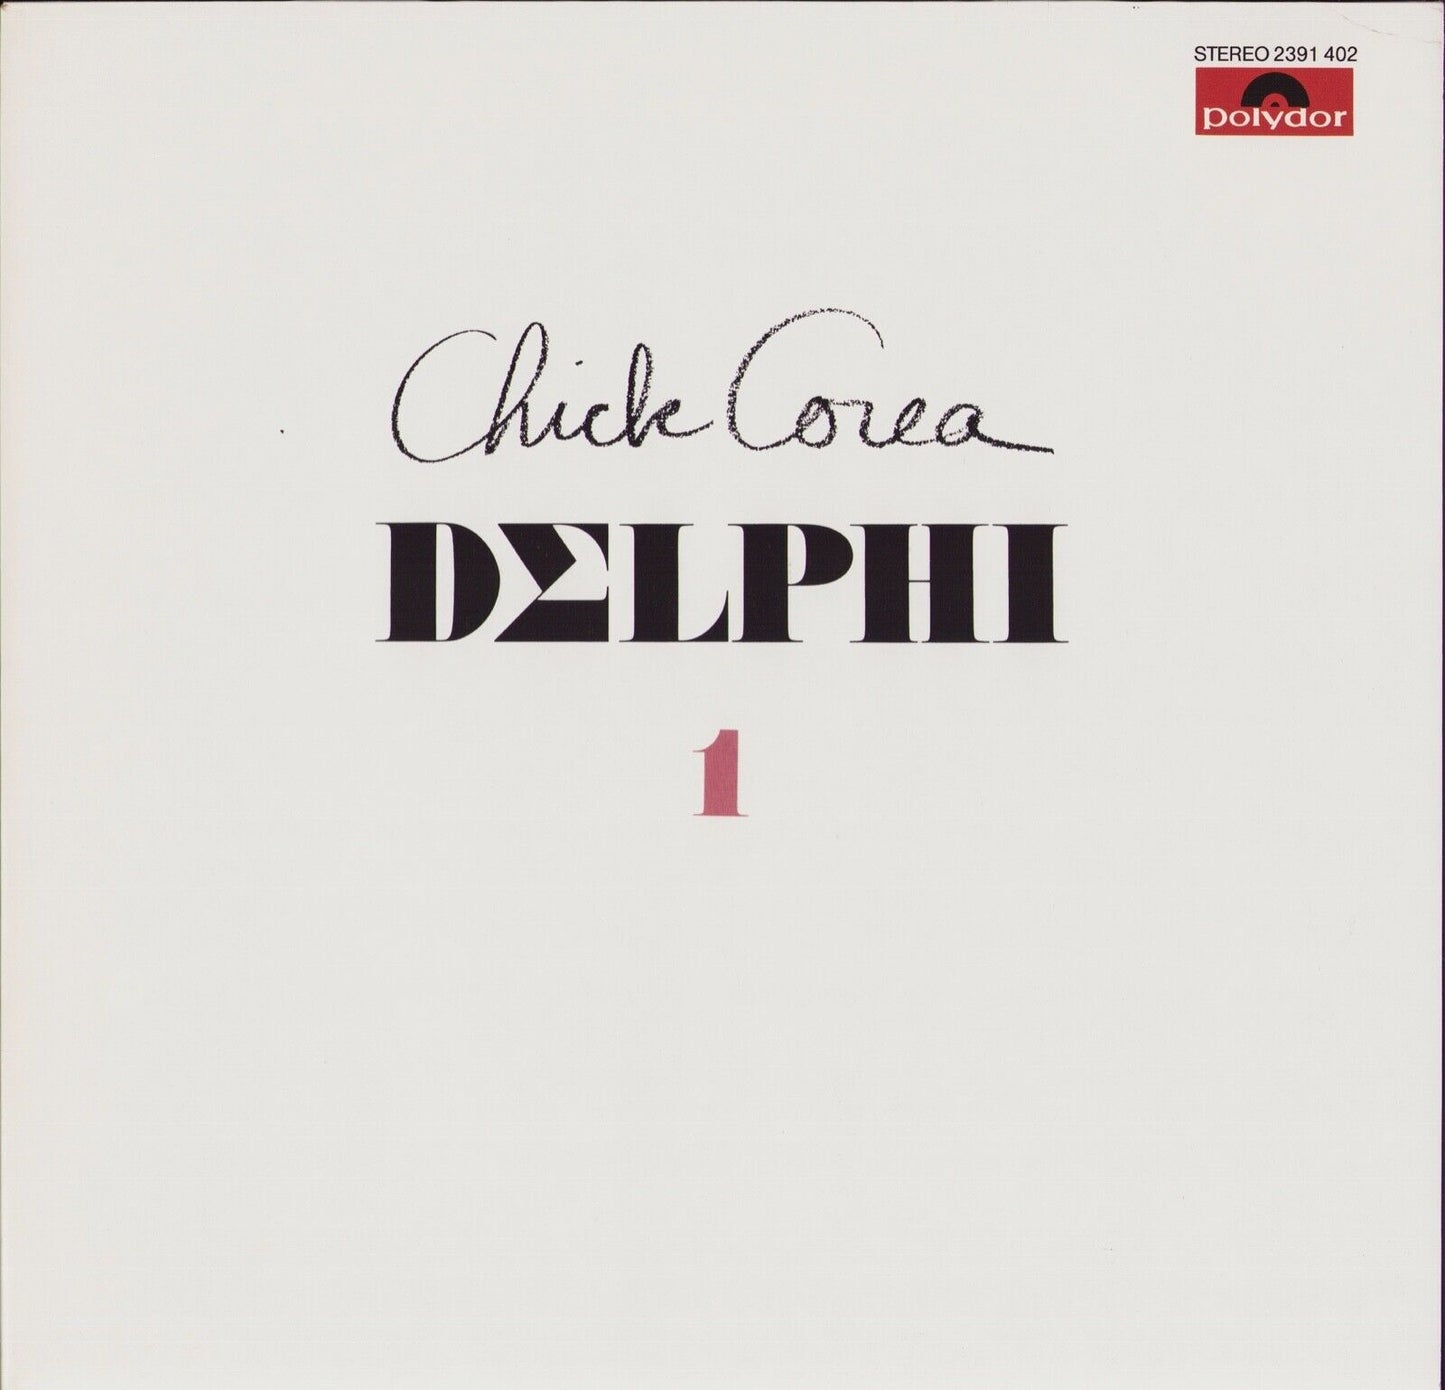 Chick Corea ‎- Delphi 1 Solo Piano Improvisations Vinyl LP DE